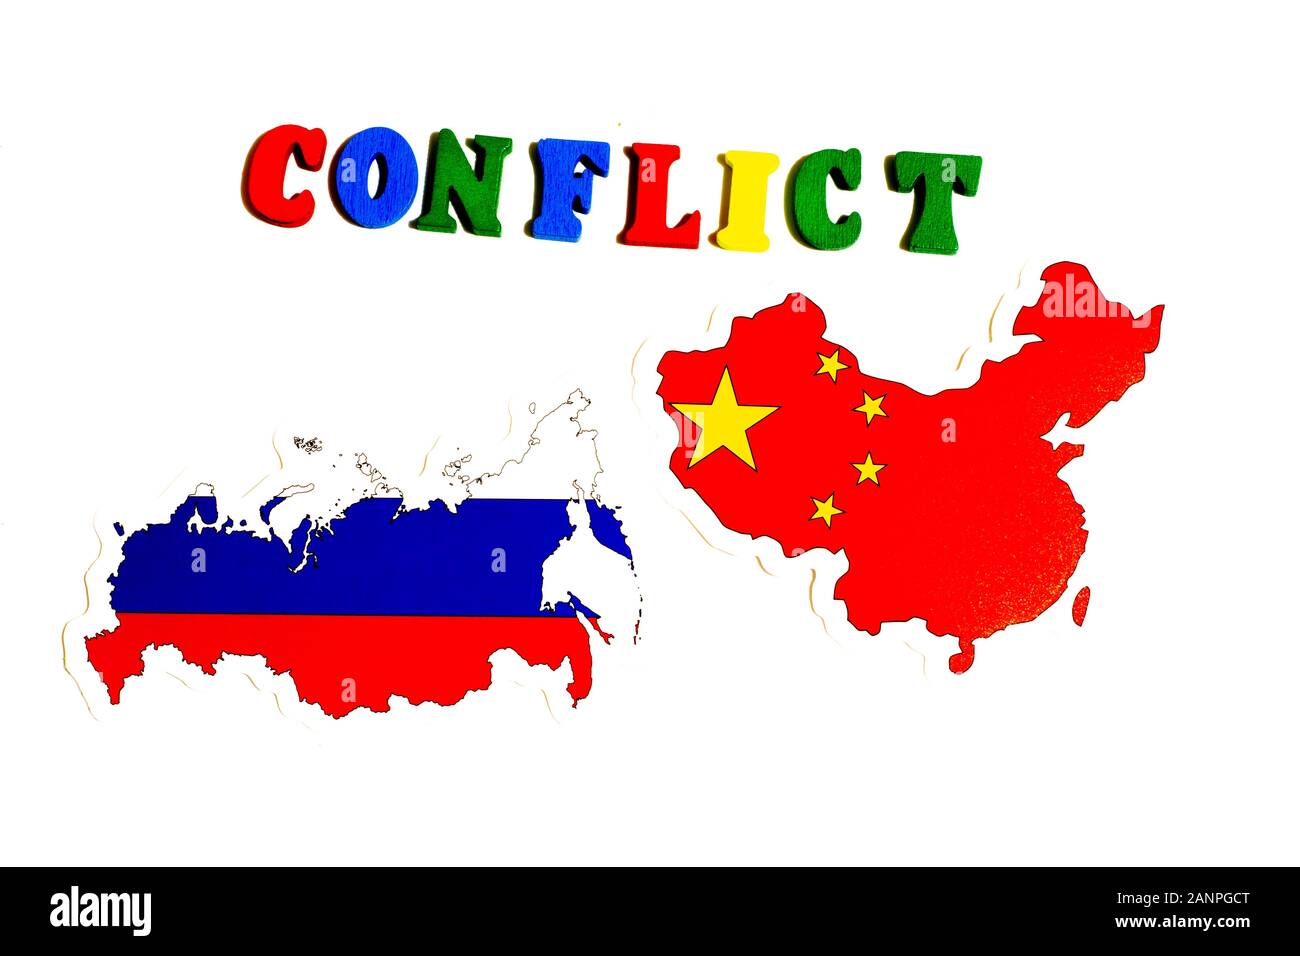 Los Angeles, Californie, États-Unis - 17 janvier 2020: La Russie et la Chine concept de conflit politique. Drapeau national sur fond blanc, éditorial illustratif Banque D'Images